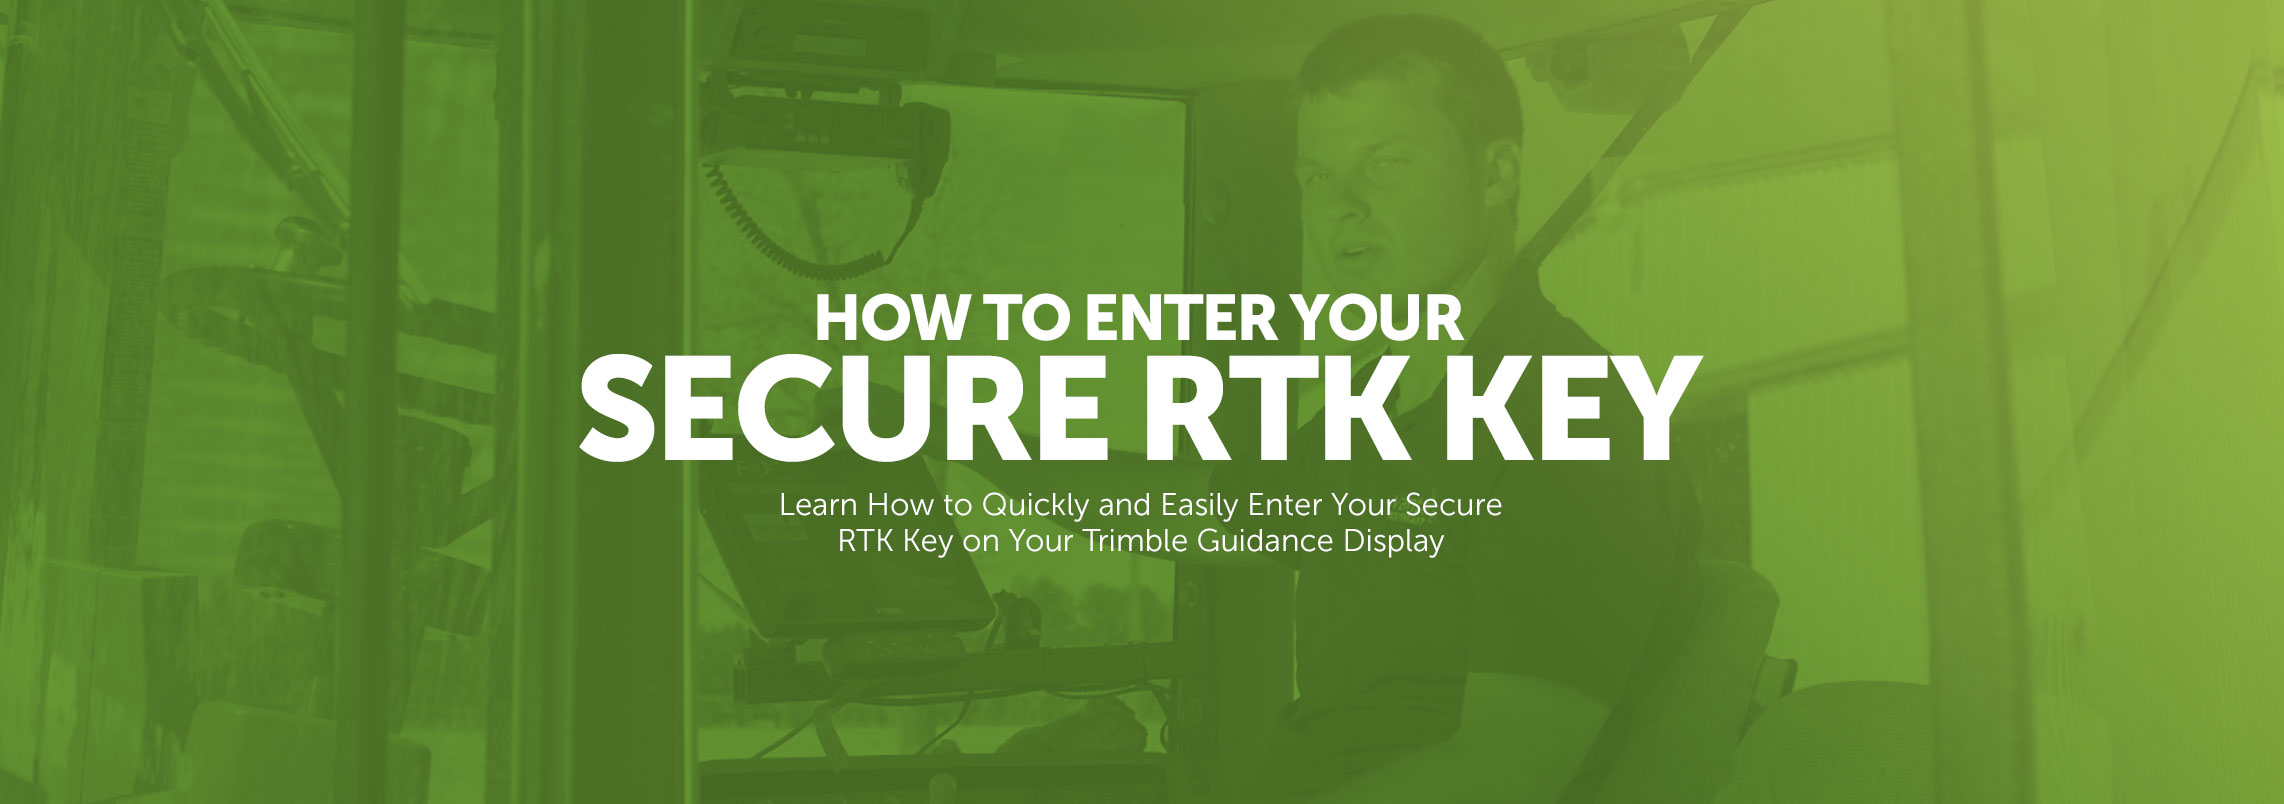 Secure RTK Key Banner